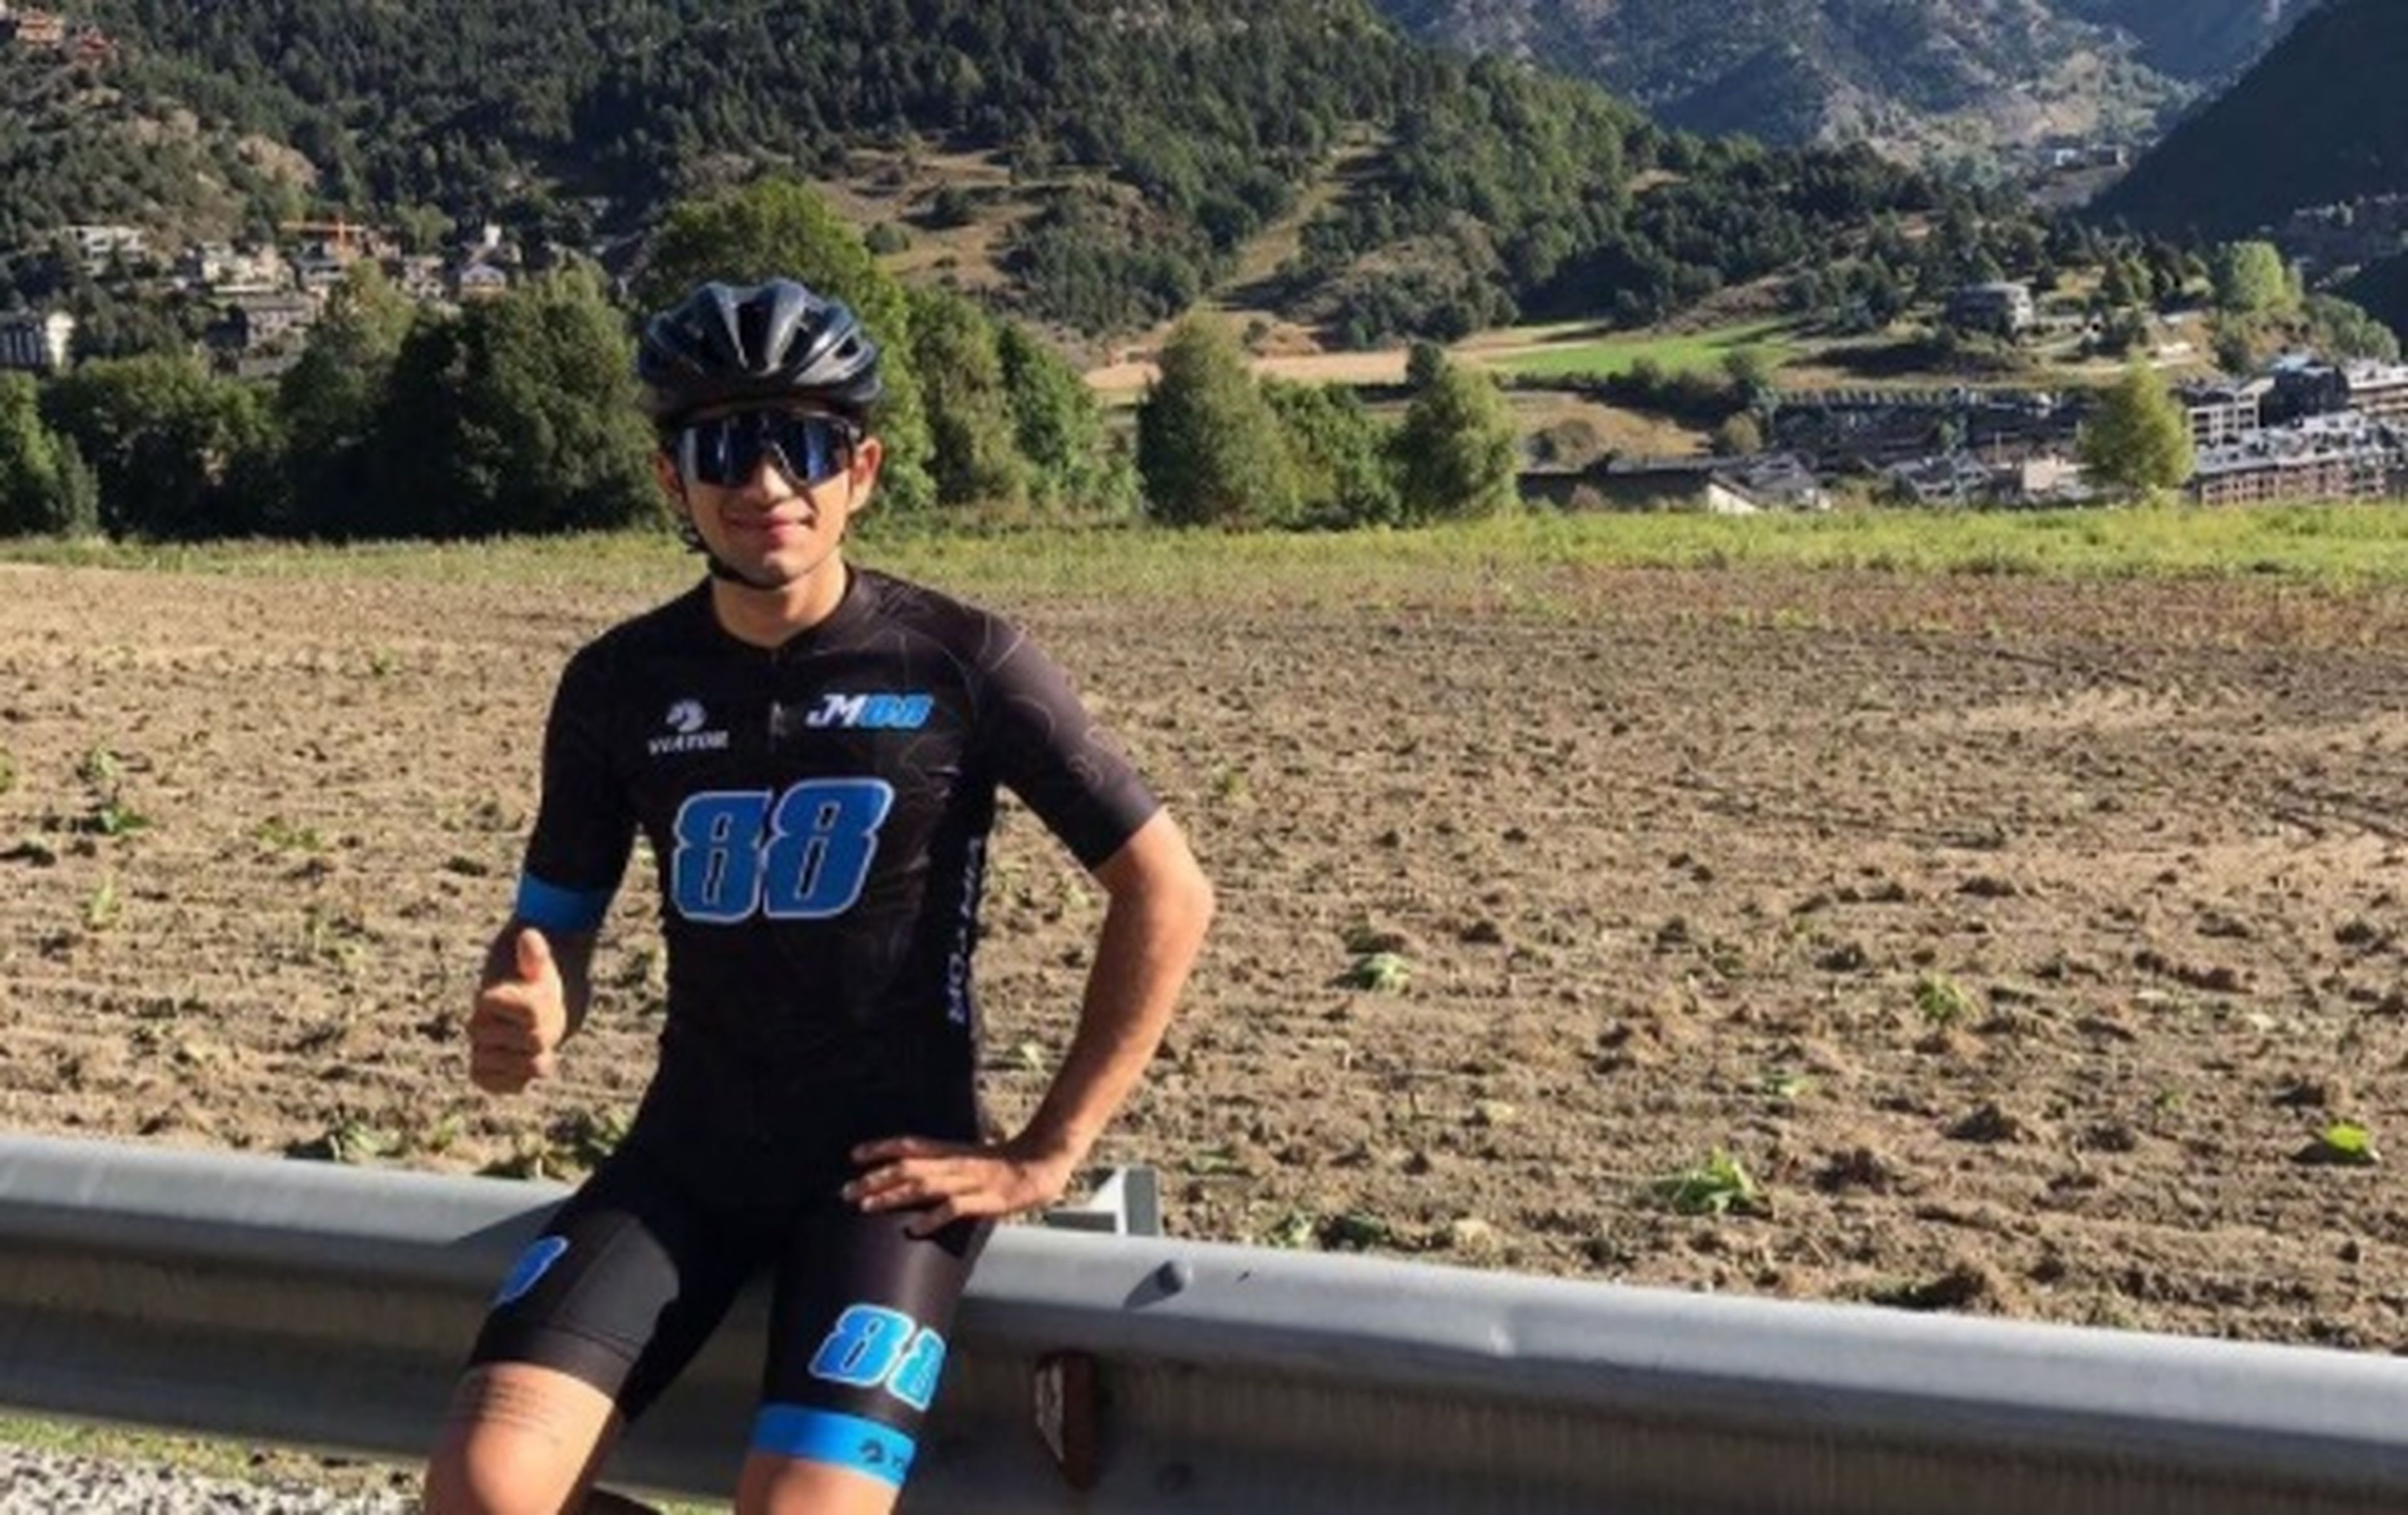 Jorge Martín sufre el atropello de un coche mientras montaba en bicicleta